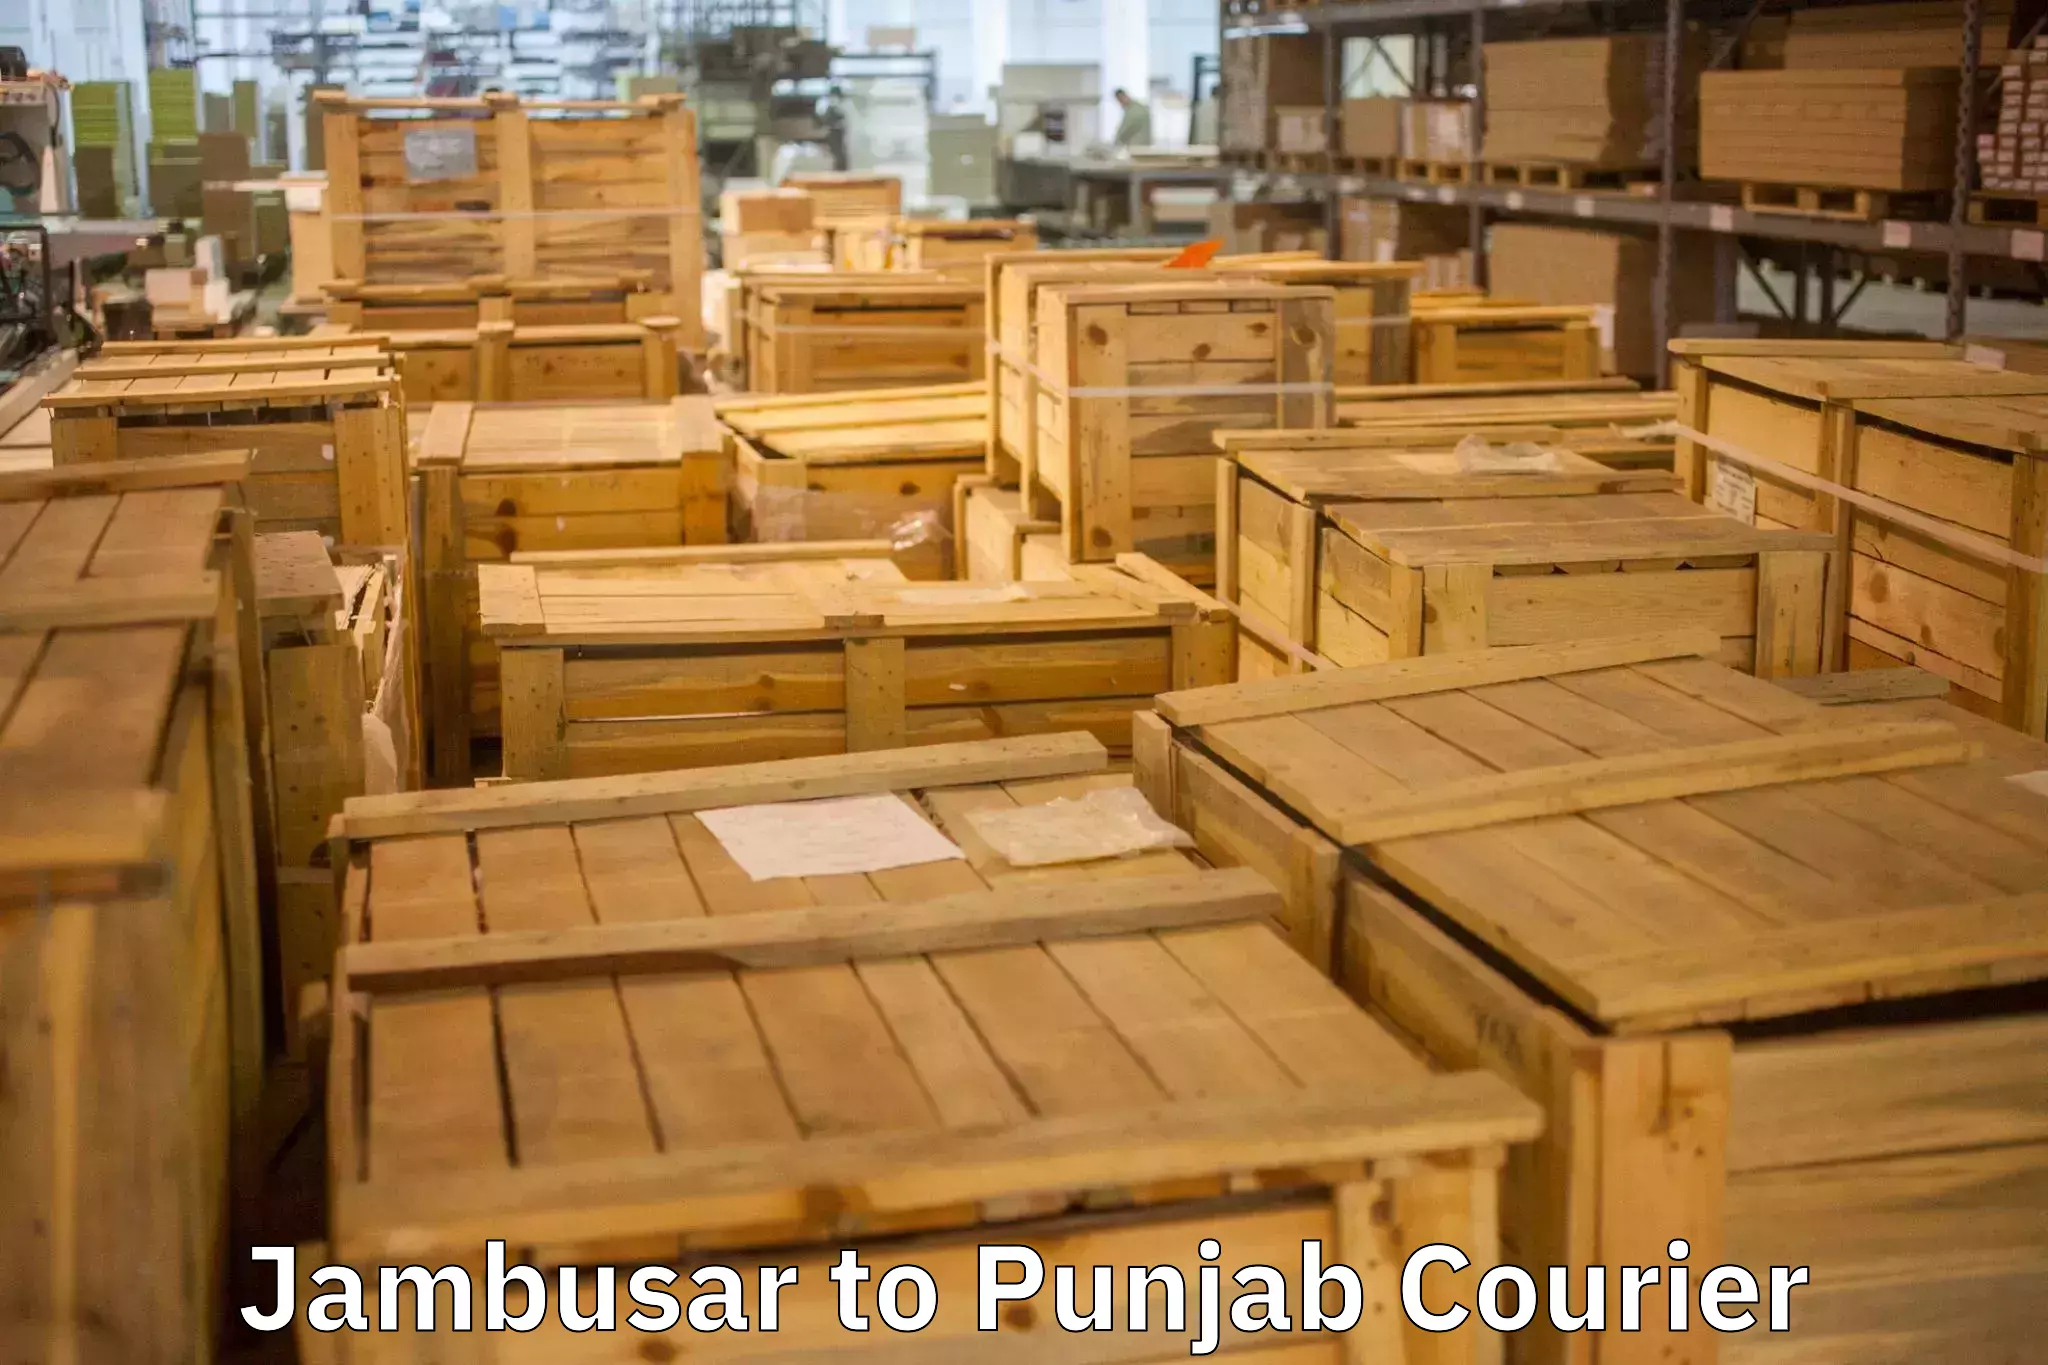 Reliable furniture transport Jambusar to Punjab